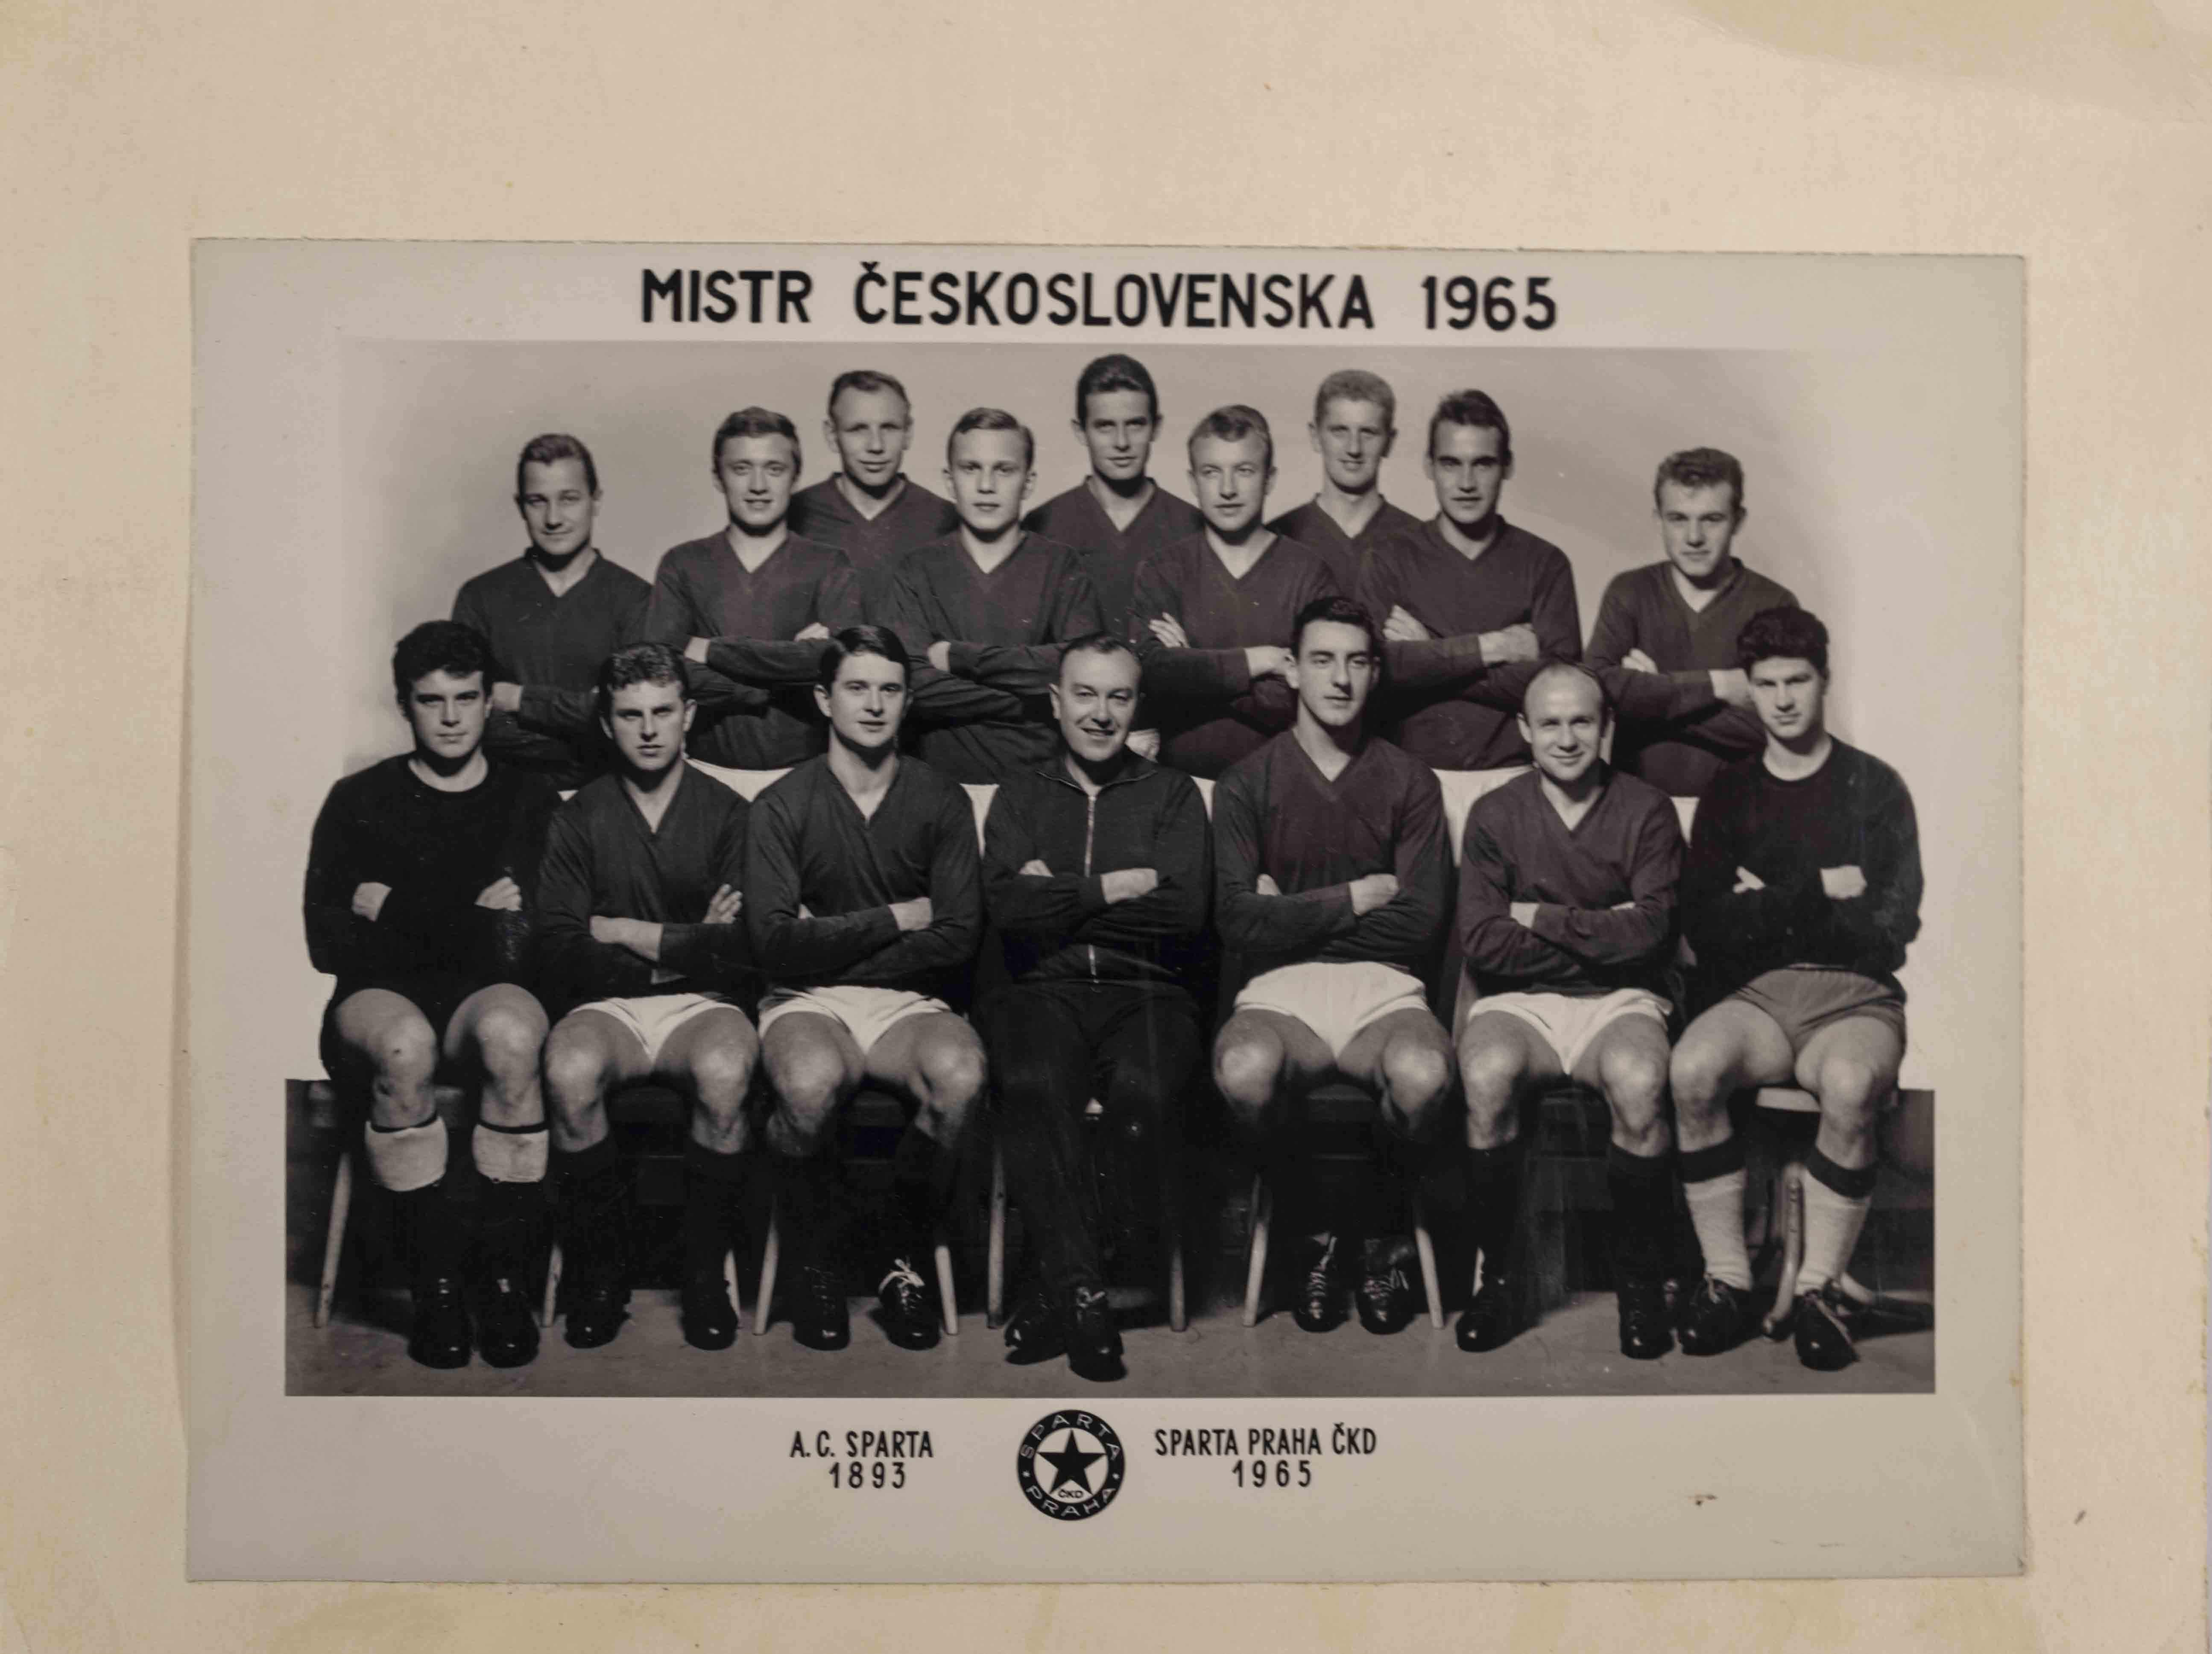 Fotbalový tým Sparta Praha ČKD, mistr ČSSR 1965